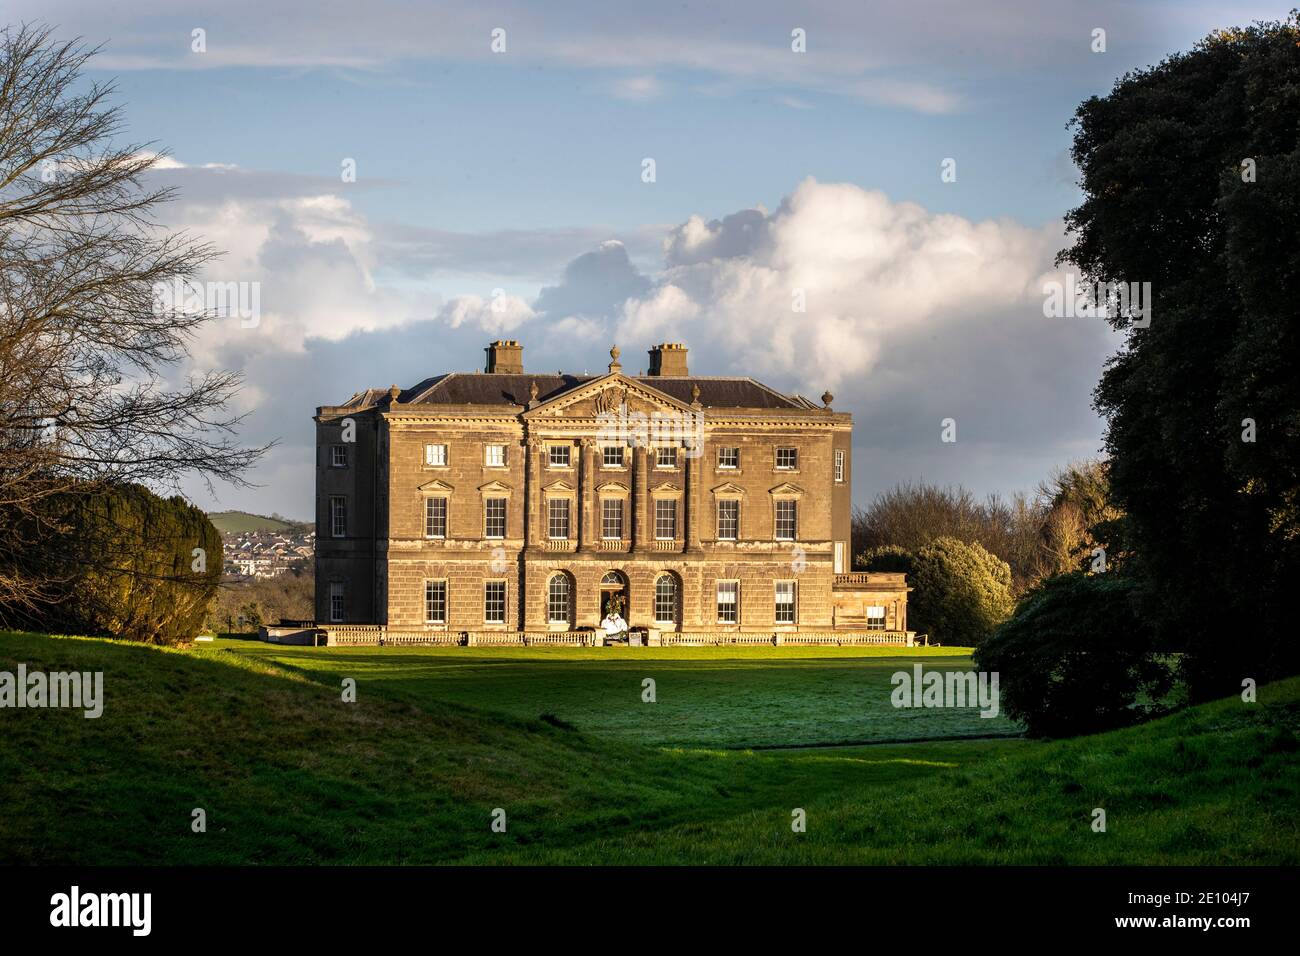 Castle Ward, un établissement du XVIIIe siècle du National Trust situé près du village de Strangford, dans le comté de Down, en Irlande du Nord. Banque D'Images